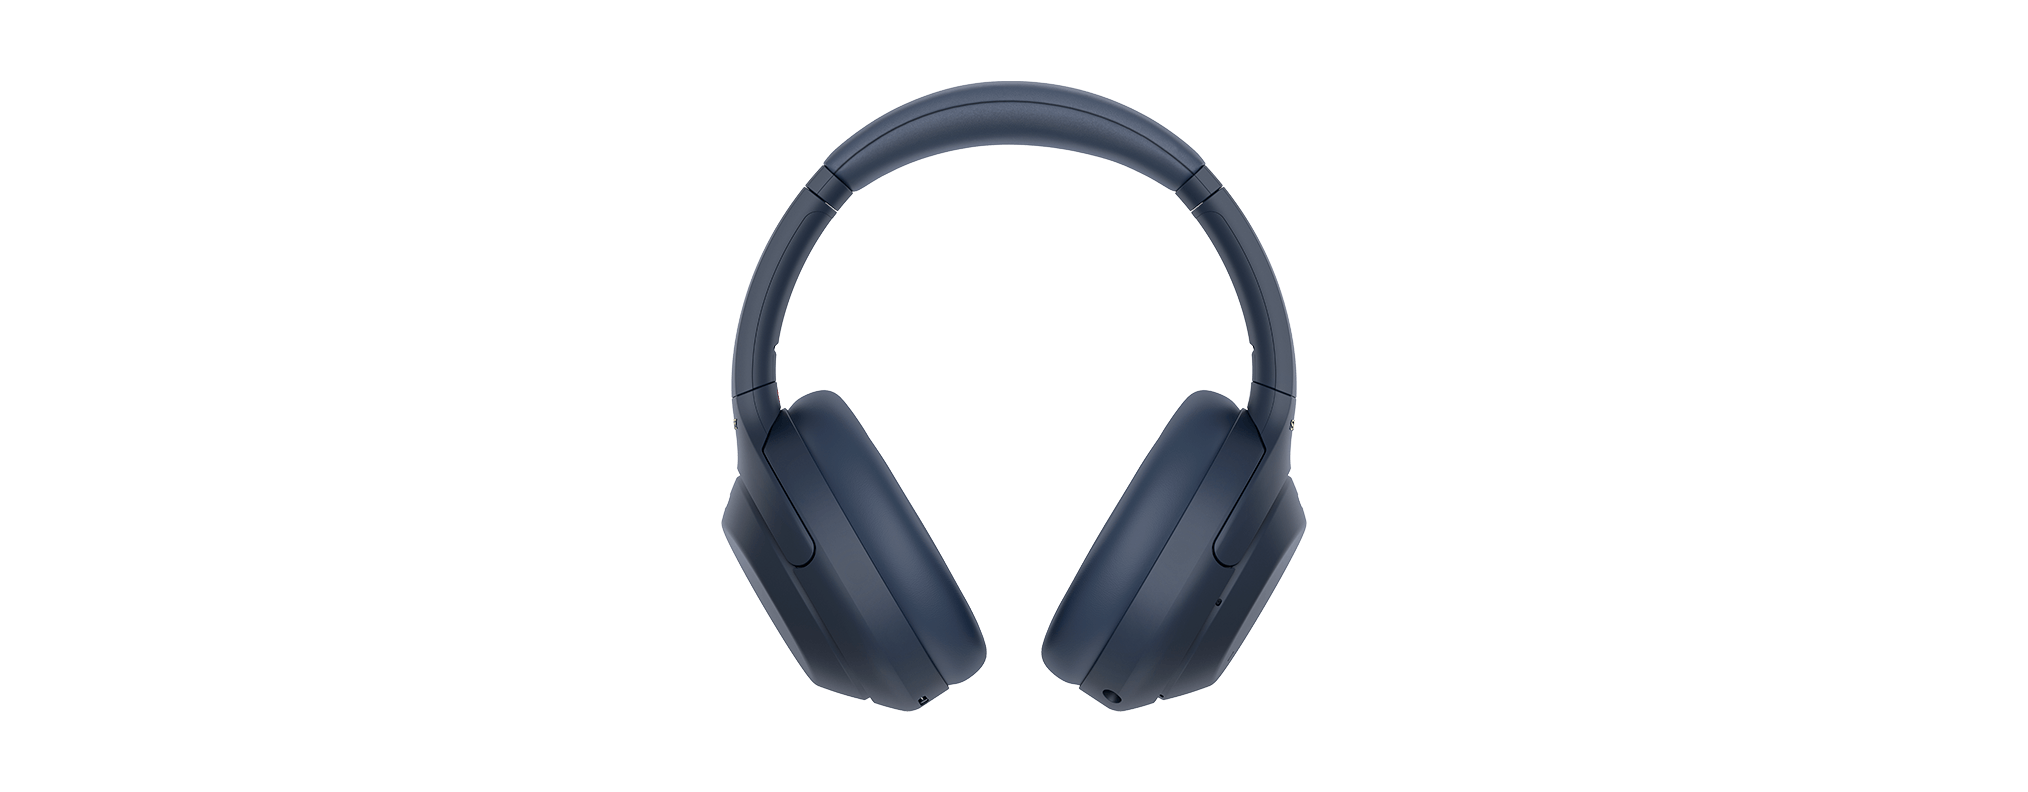 Sony WH-1000XM4 Auriculares inalámbricos premium con cancelación de ruido  con micrófono para llamadas telefónicas y control de voz Alexa, WH1000XM4